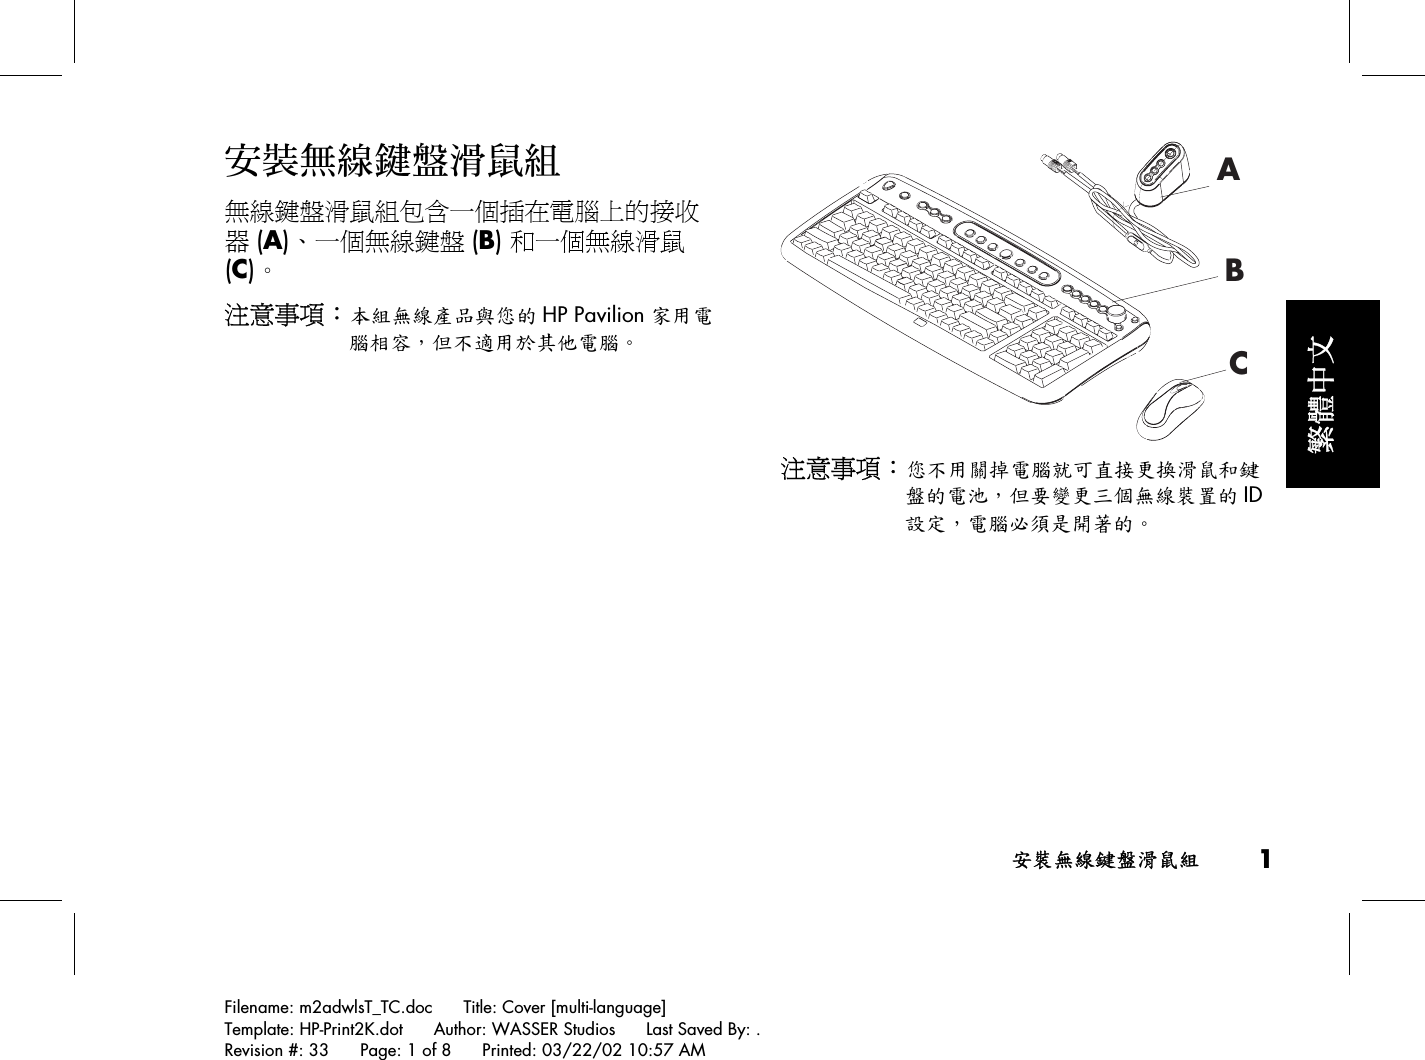 安裝無線鍵盤滑鼠組 1Filename: m2adwlsT_TC.doc      Title: Cover [multi-language]Template: HP-Print2K.dot      Author: WASSER Studios      Last Saved By: .Revision #: 33      Page: 1 of 8      Printed: 03/22/02 10:57 AM繁體中文安裝無線鍵盤滑鼠組無線鍵盤滑鼠組包含一個插在電腦上的接收器 (A)、一個無線鍵盤 (B) 和一個無線滑鼠(C)。注意事項：本組無線產品與您的 HP Pavilion 家用電腦相容，但不適用於其他電腦。ABC注意事項：您不用關掉電腦就可直接更換滑鼠和鍵盤的電池，但要變更三個無線裝置的 ID設定，電腦必須是開著的。